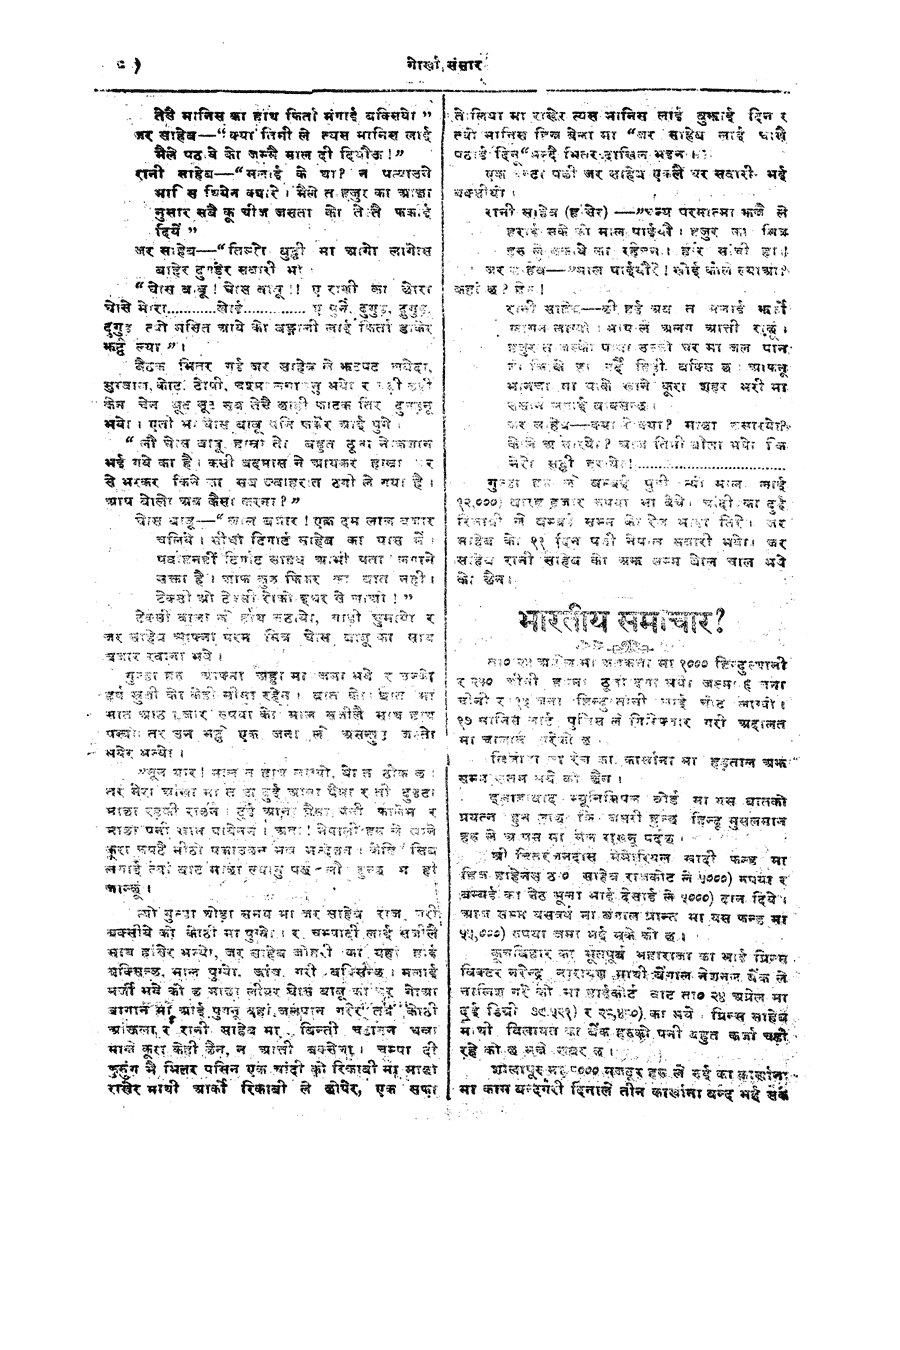 Gorkha Sansar, 4 May 1928, page 8